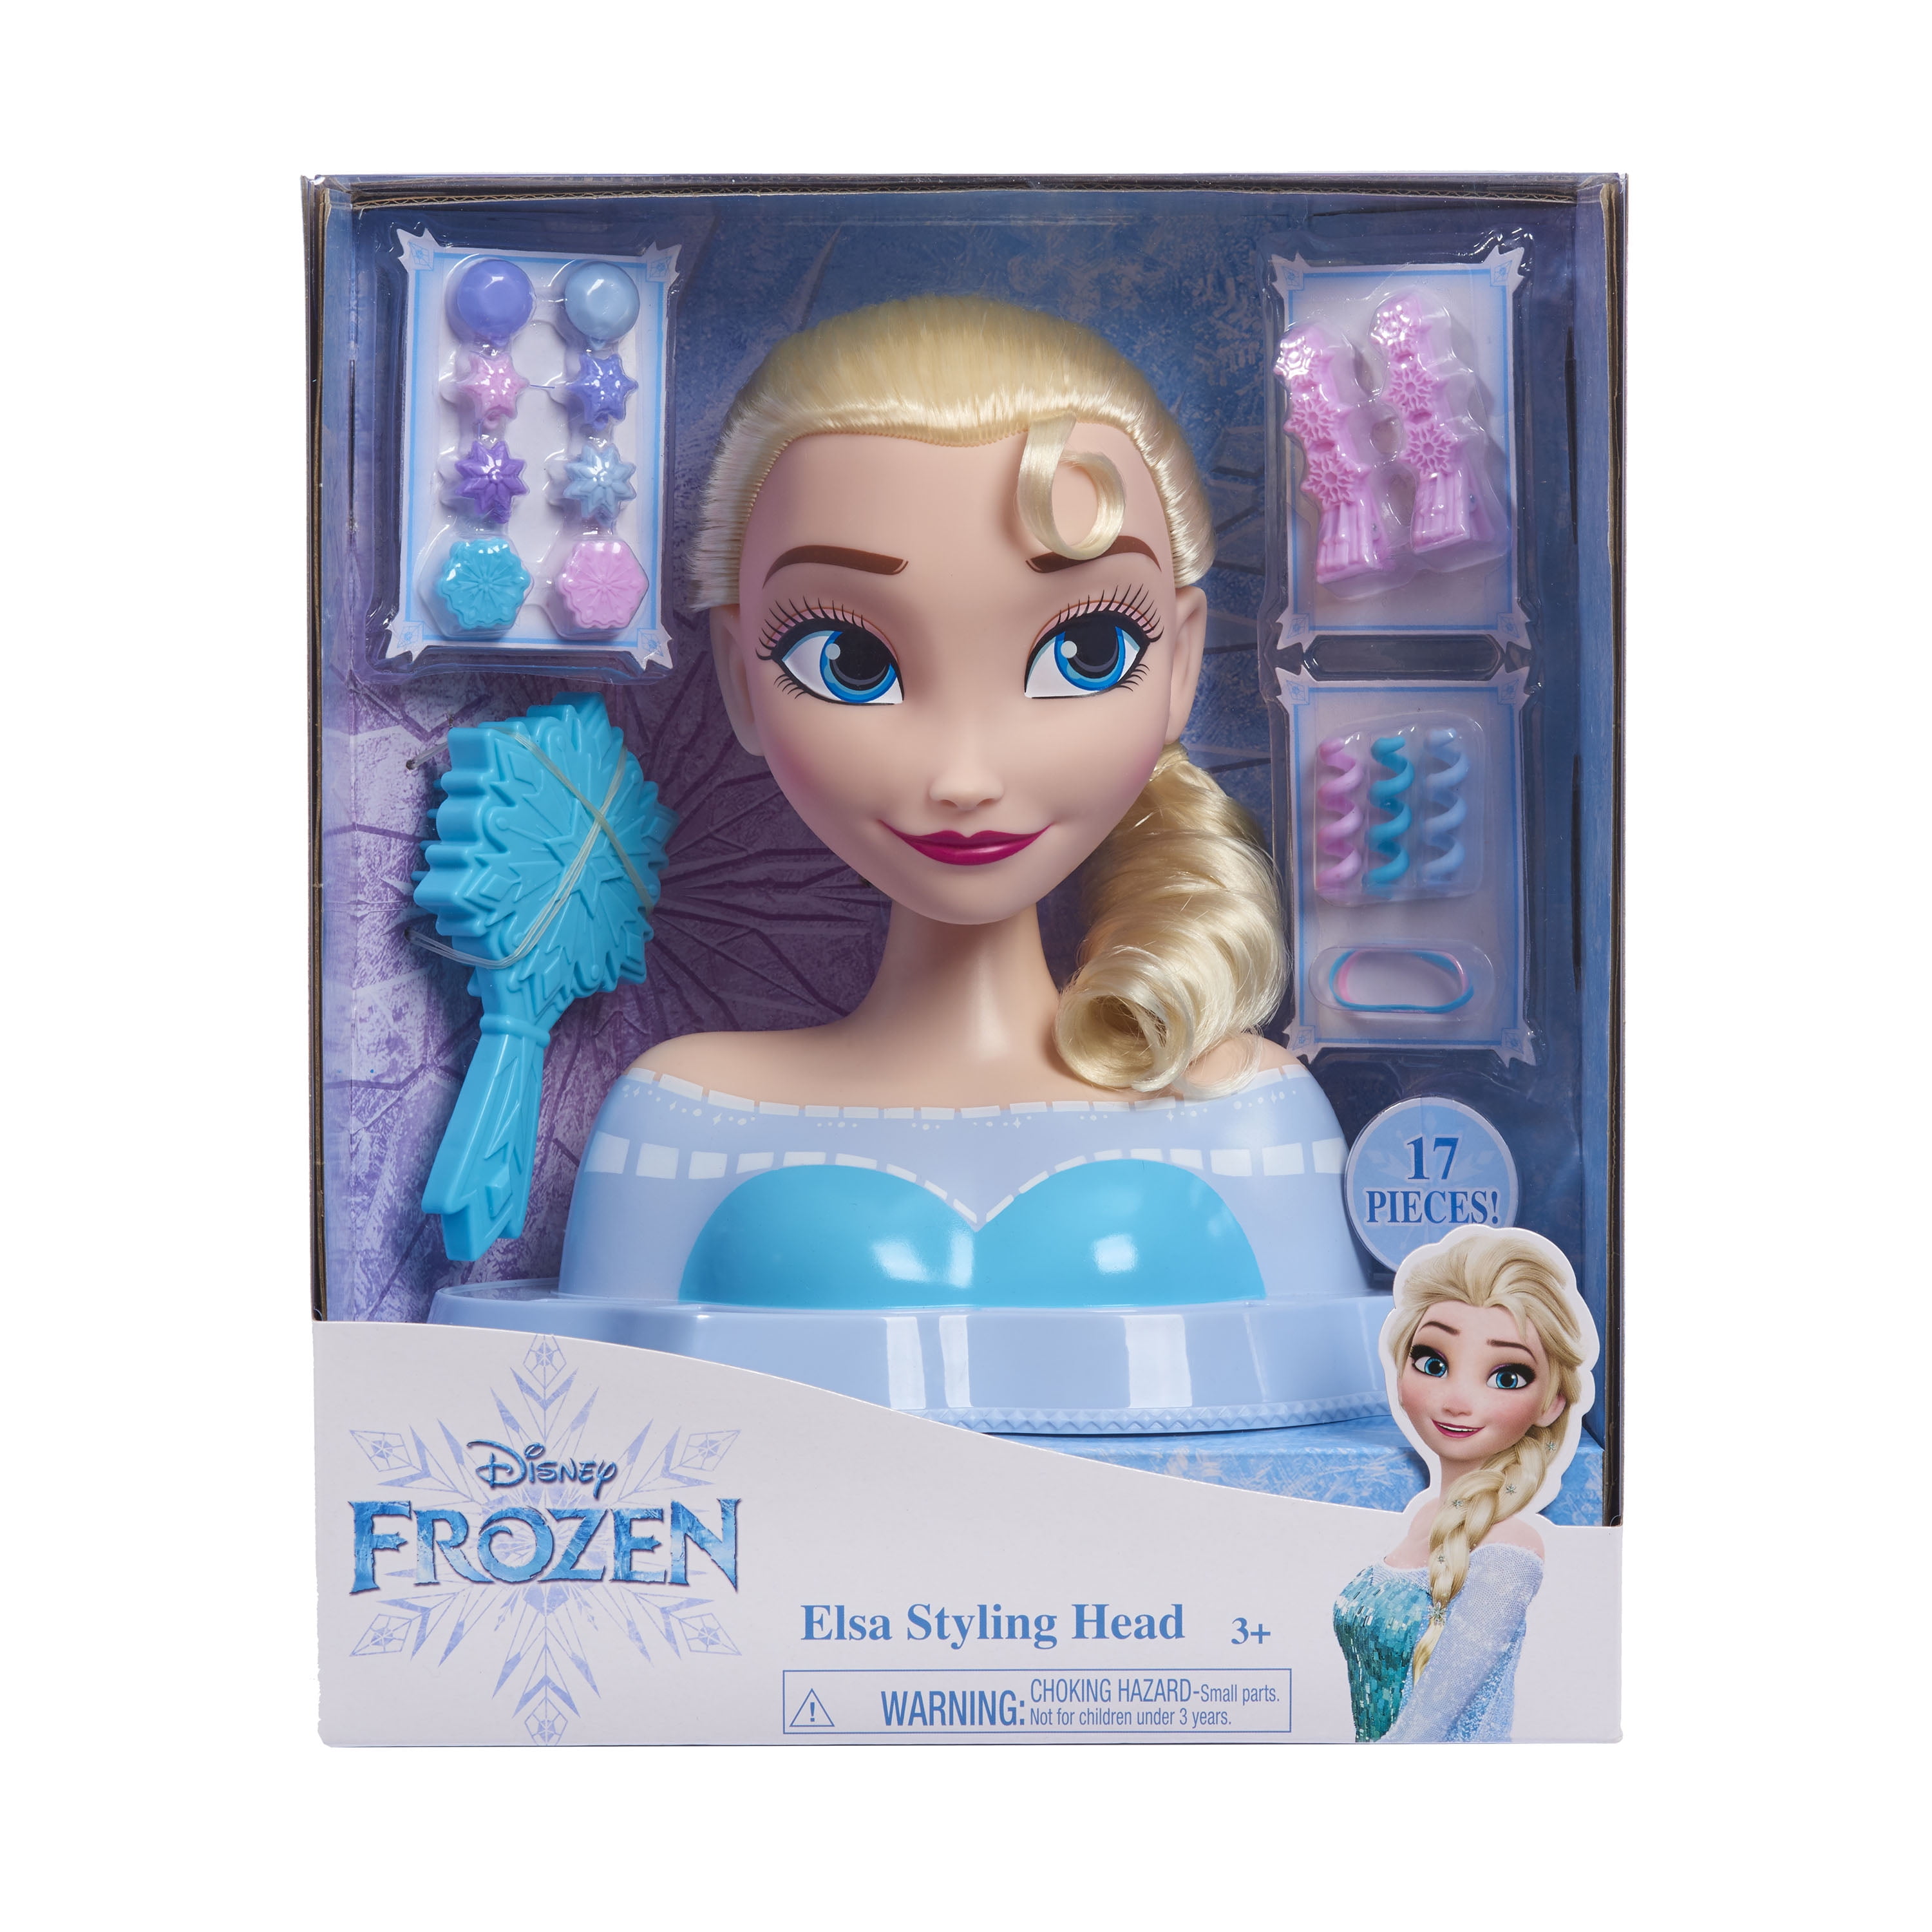 18-pieces Disney Frozen 2 Elsa the Snow Queen Deluxe Styling Head 